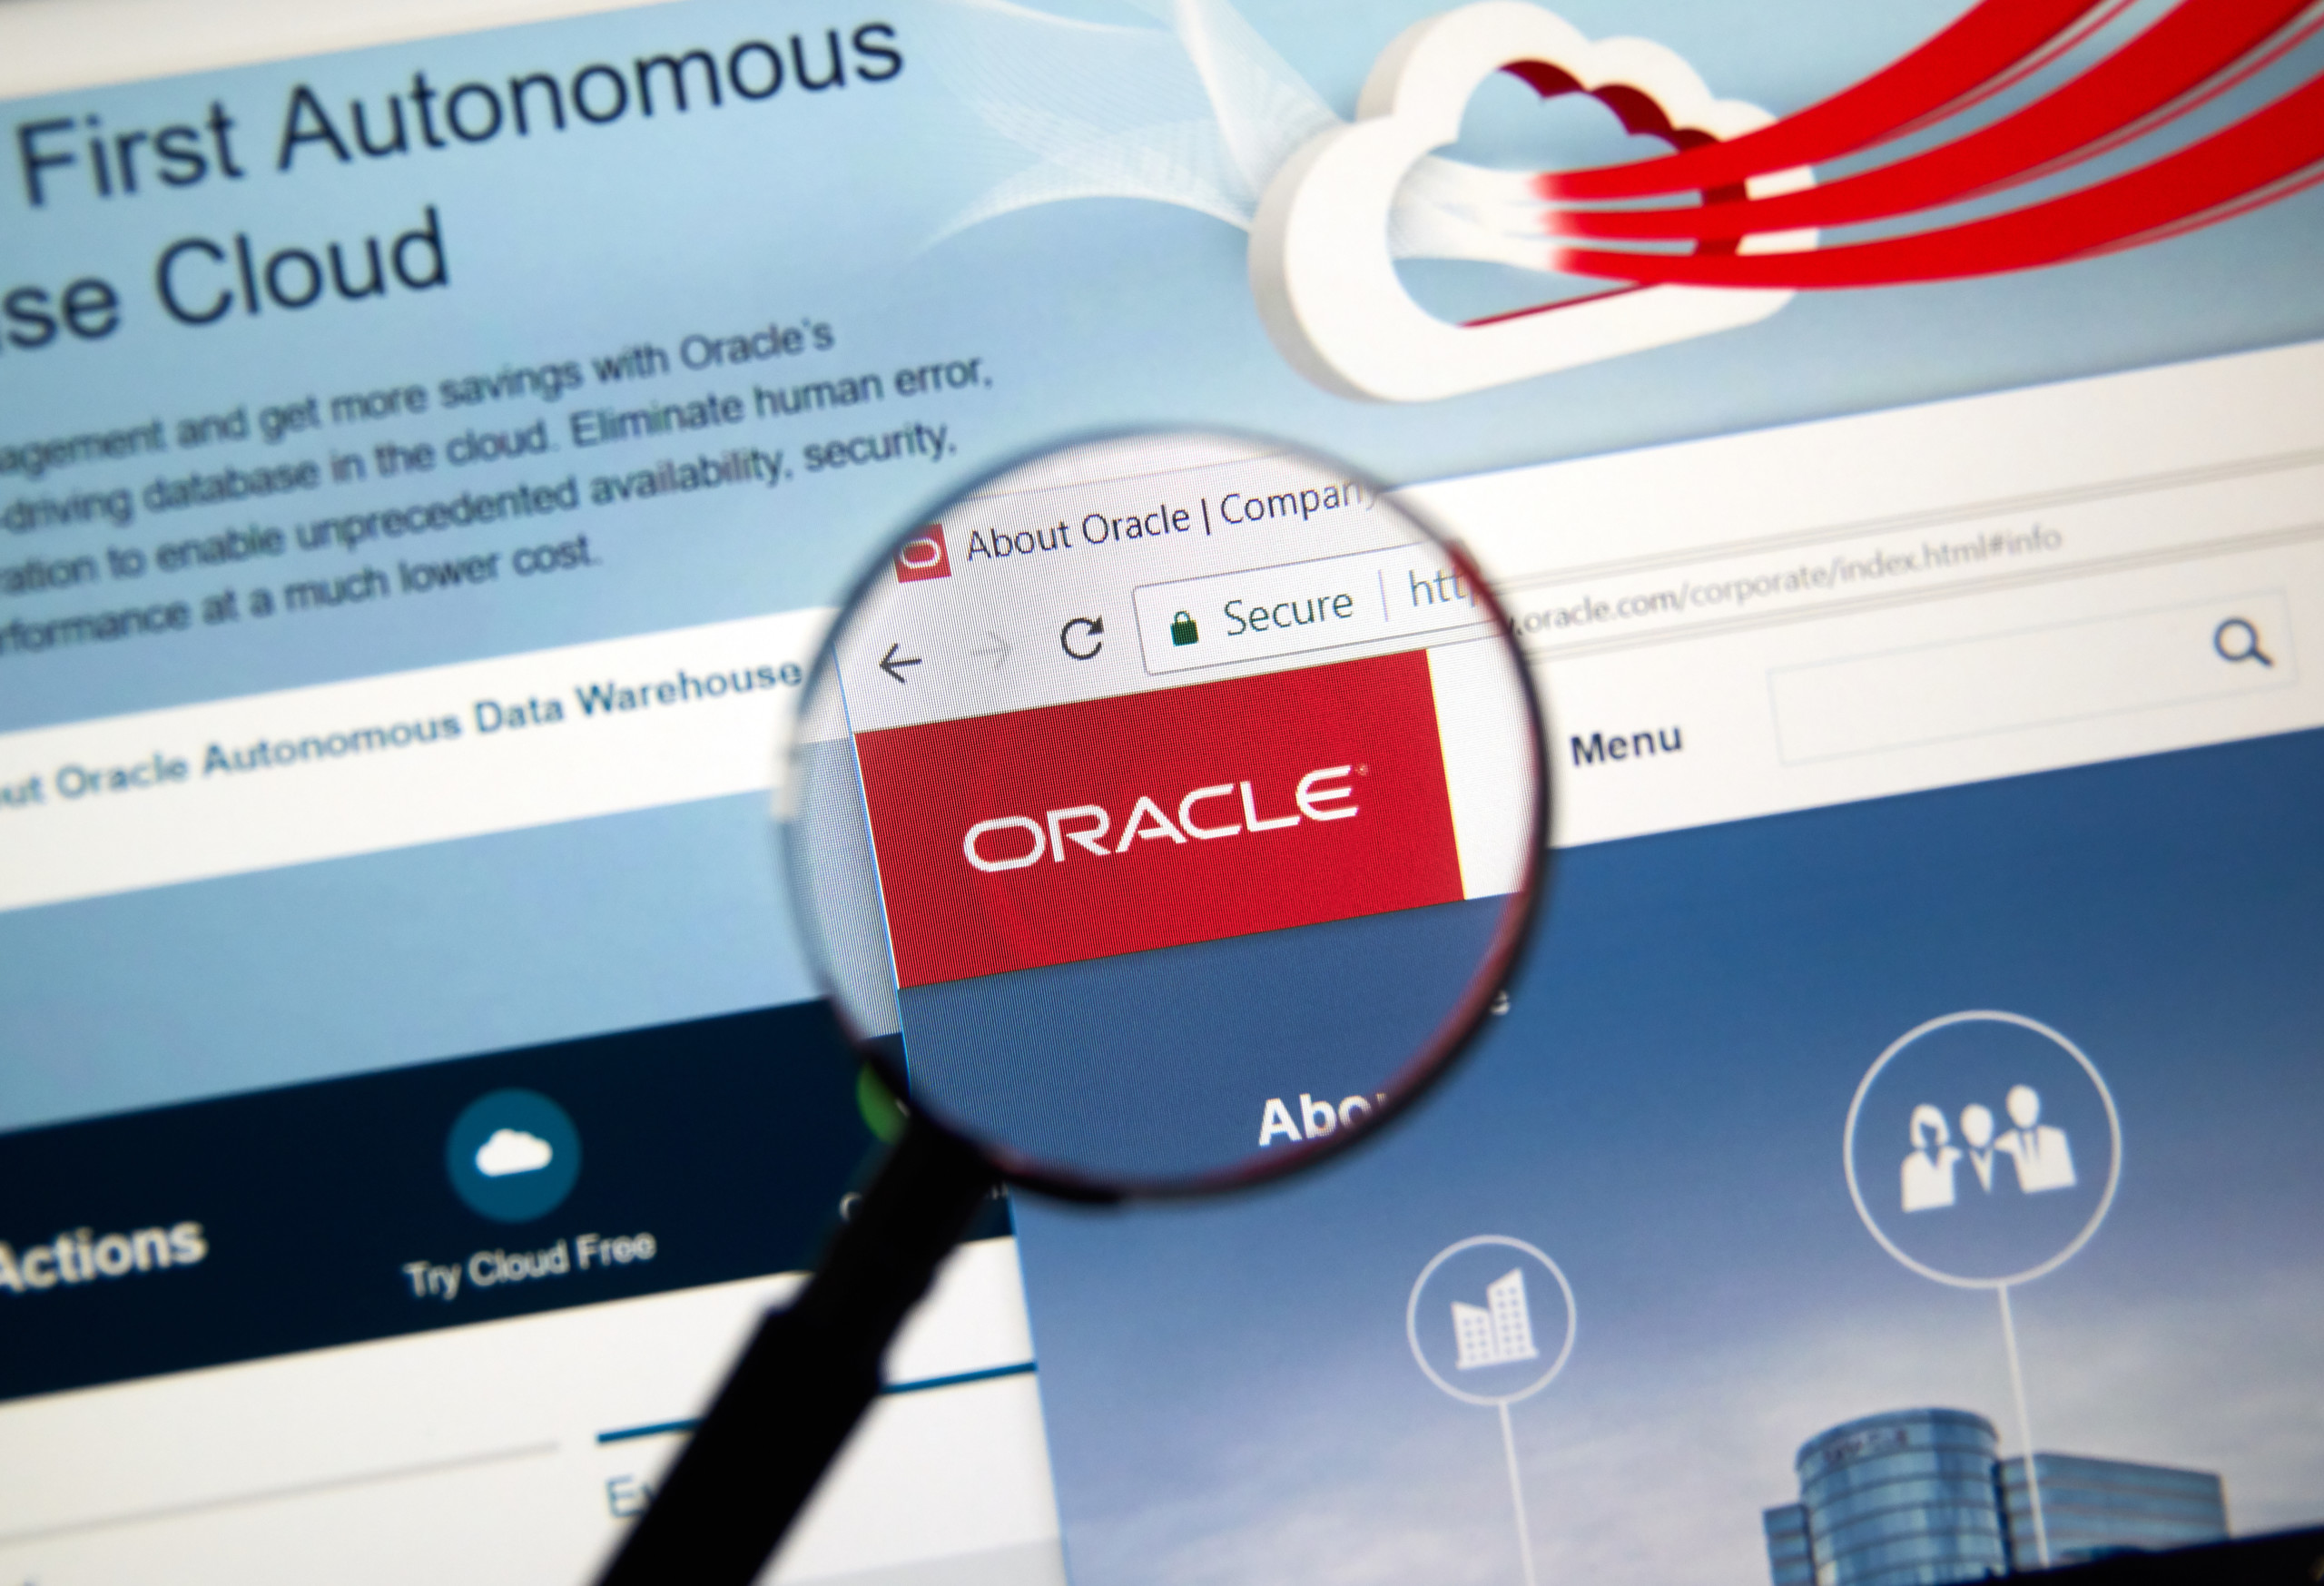 Big-Call-Depotupdate: Depotperformance mit +64,4% weiter stabil im Bereich des Allzeithochs - Oracle enttäuscht bei Cloud-Wachstum, bei Adidas stellen wir unsere Position glatt